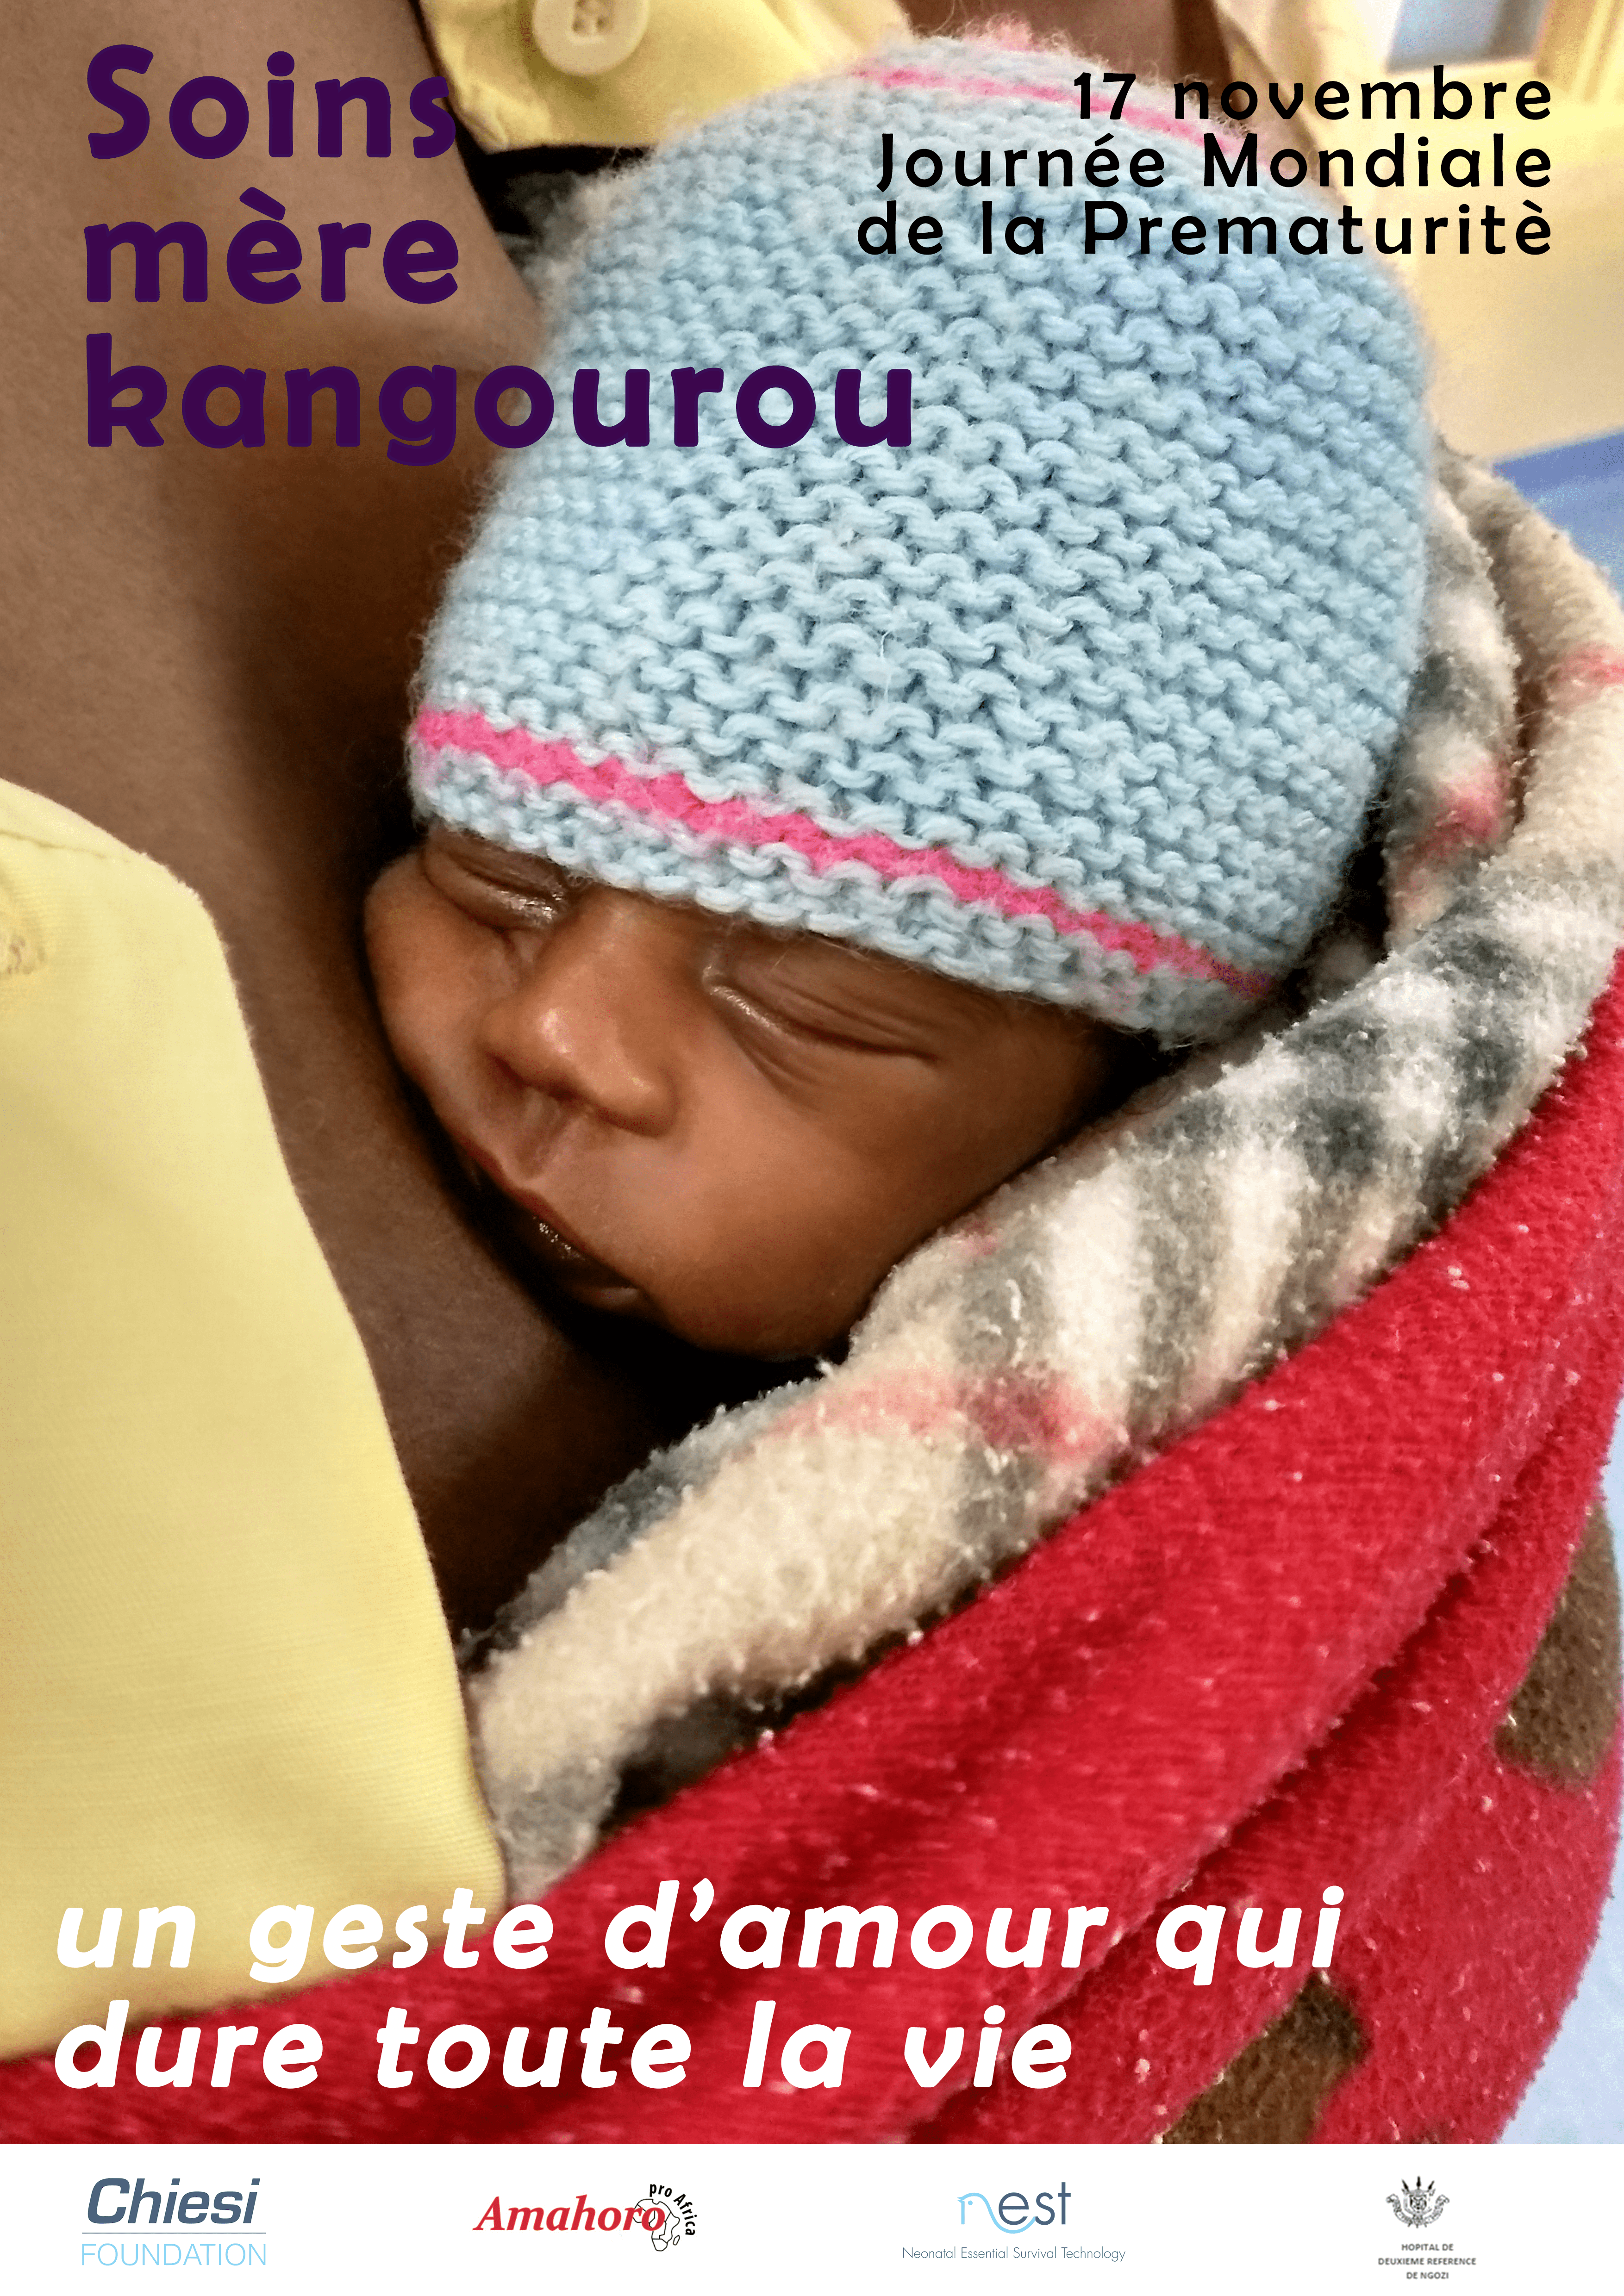 Giornata prematurità poster